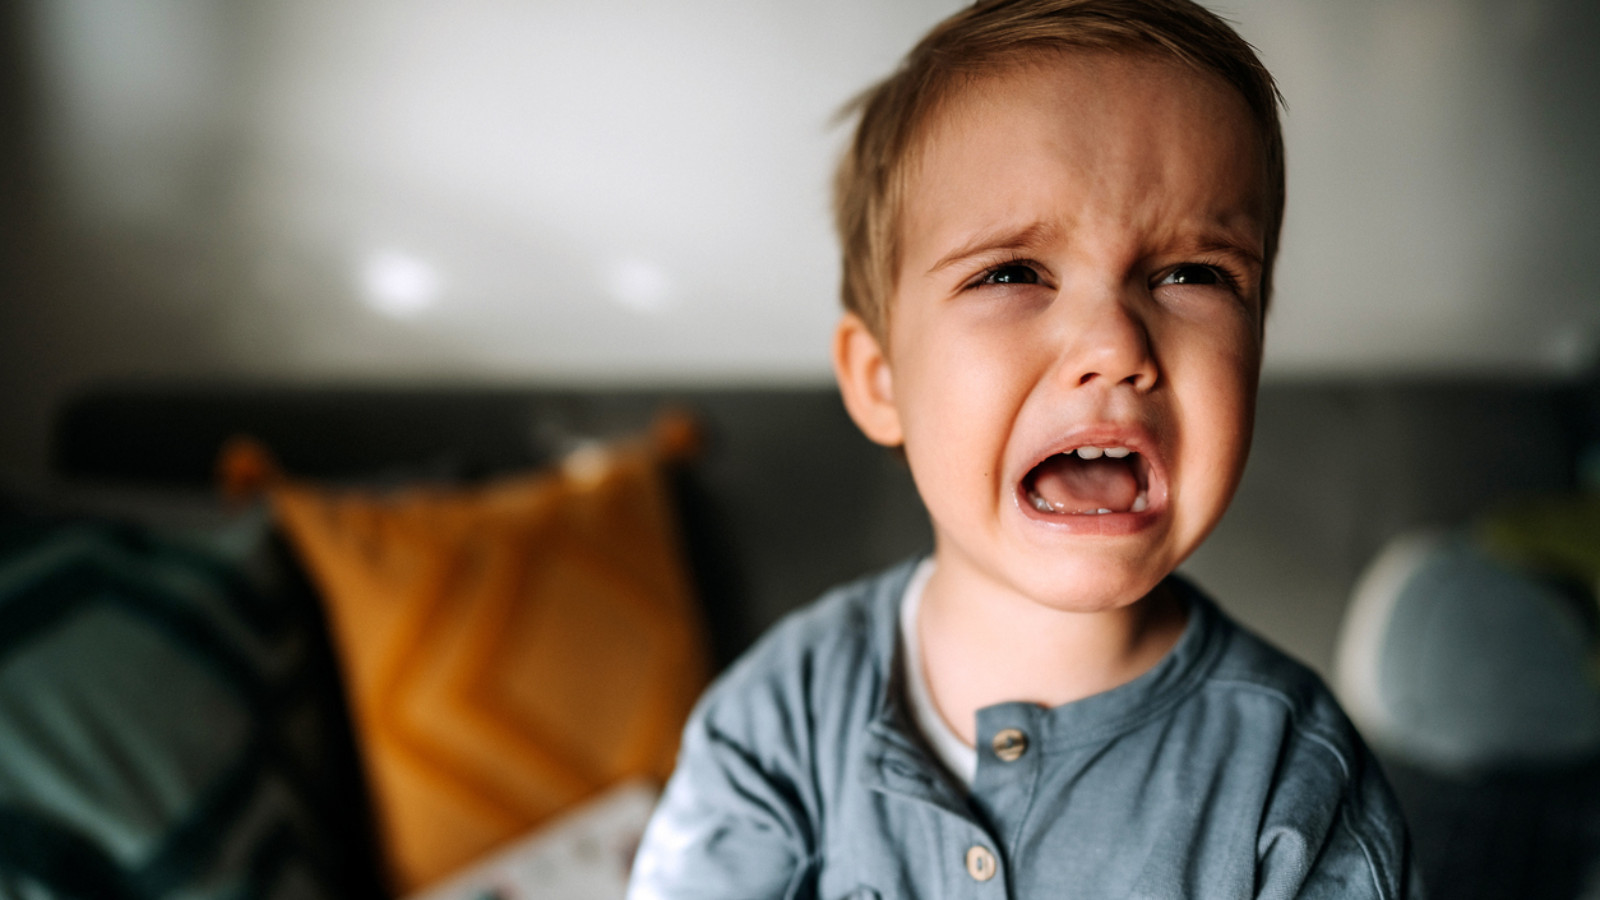 Bambino capriccioso come comportarsi: i consigli del pediatra